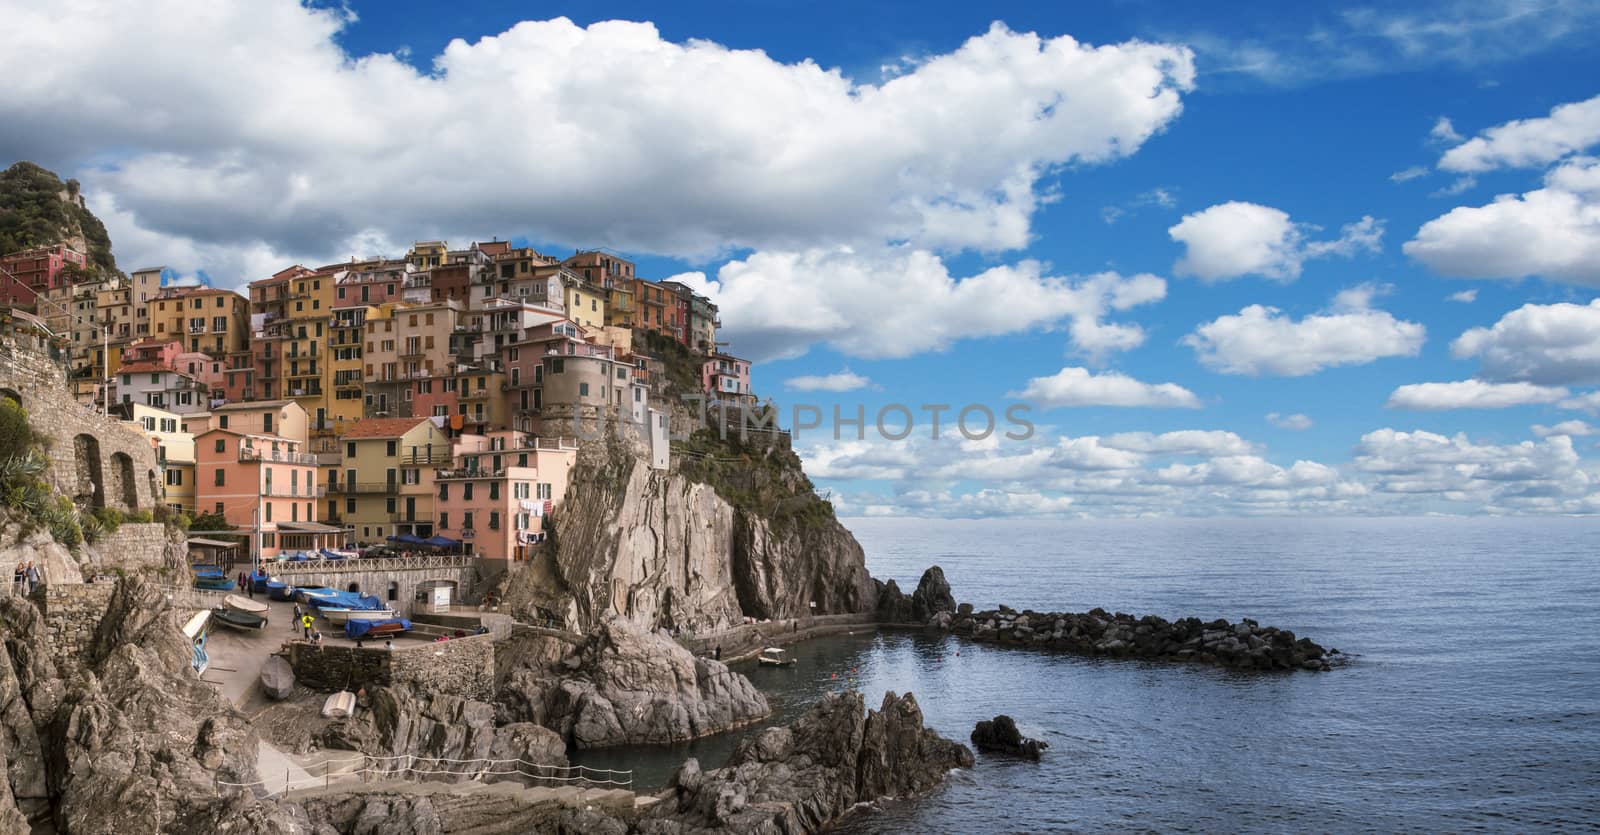 Village of Monterosso al Mare, Cinque Terre, Italy by hongee